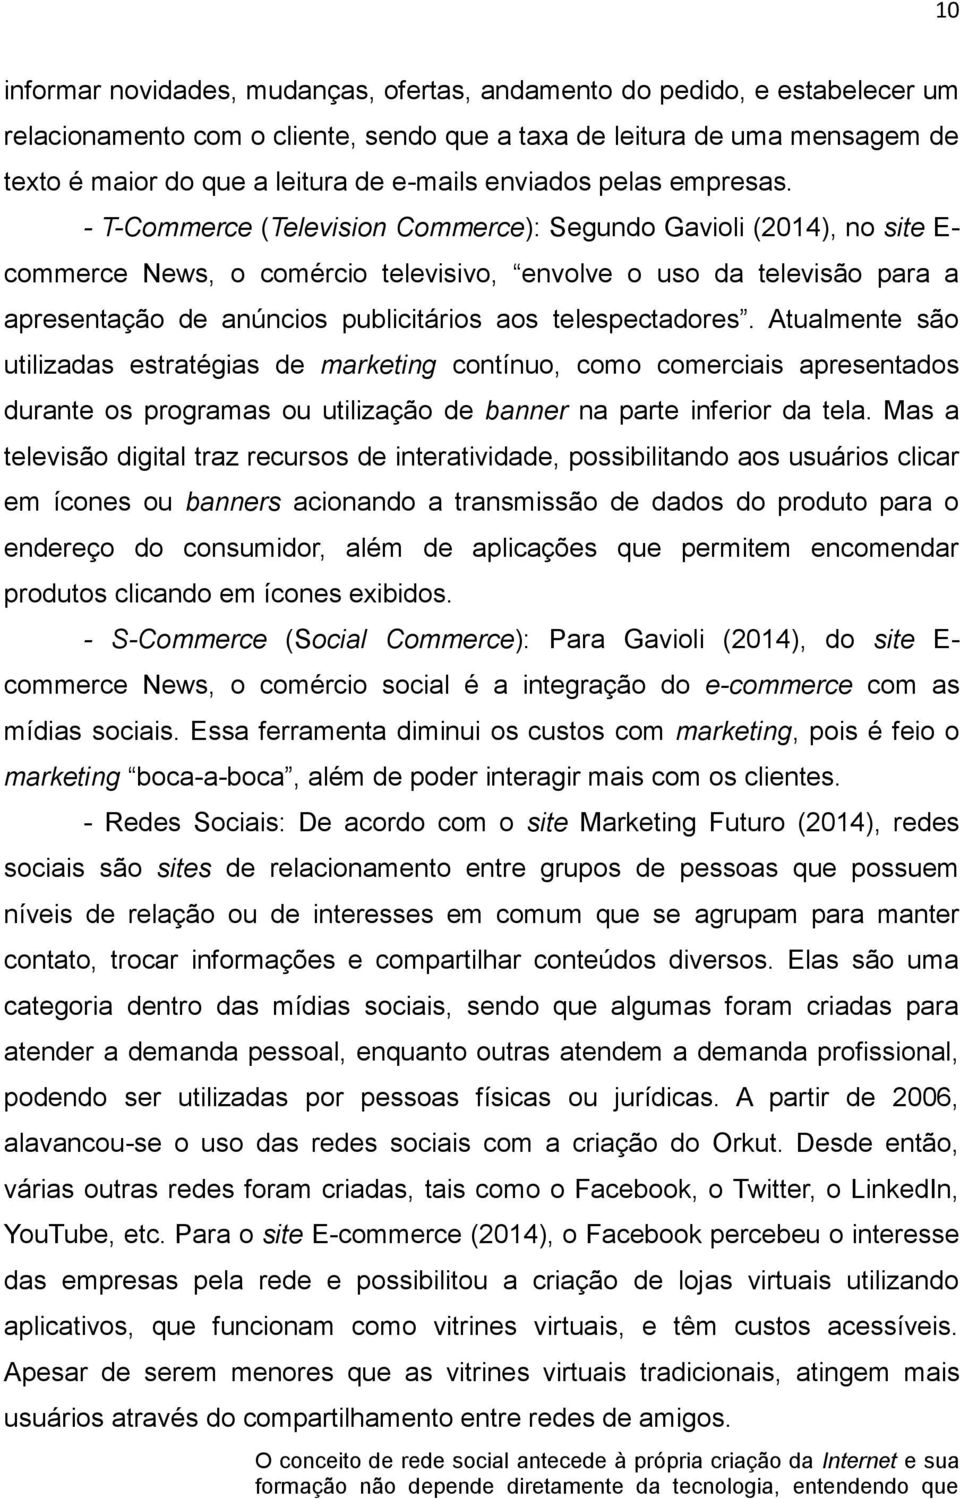 - T-Commerce (Television Commerce): Segundo Gavioli (2014), no site E- commerce News, o comércio televisivo, envolve o uso da televisão para a apresentação de anúncios publicitários aos